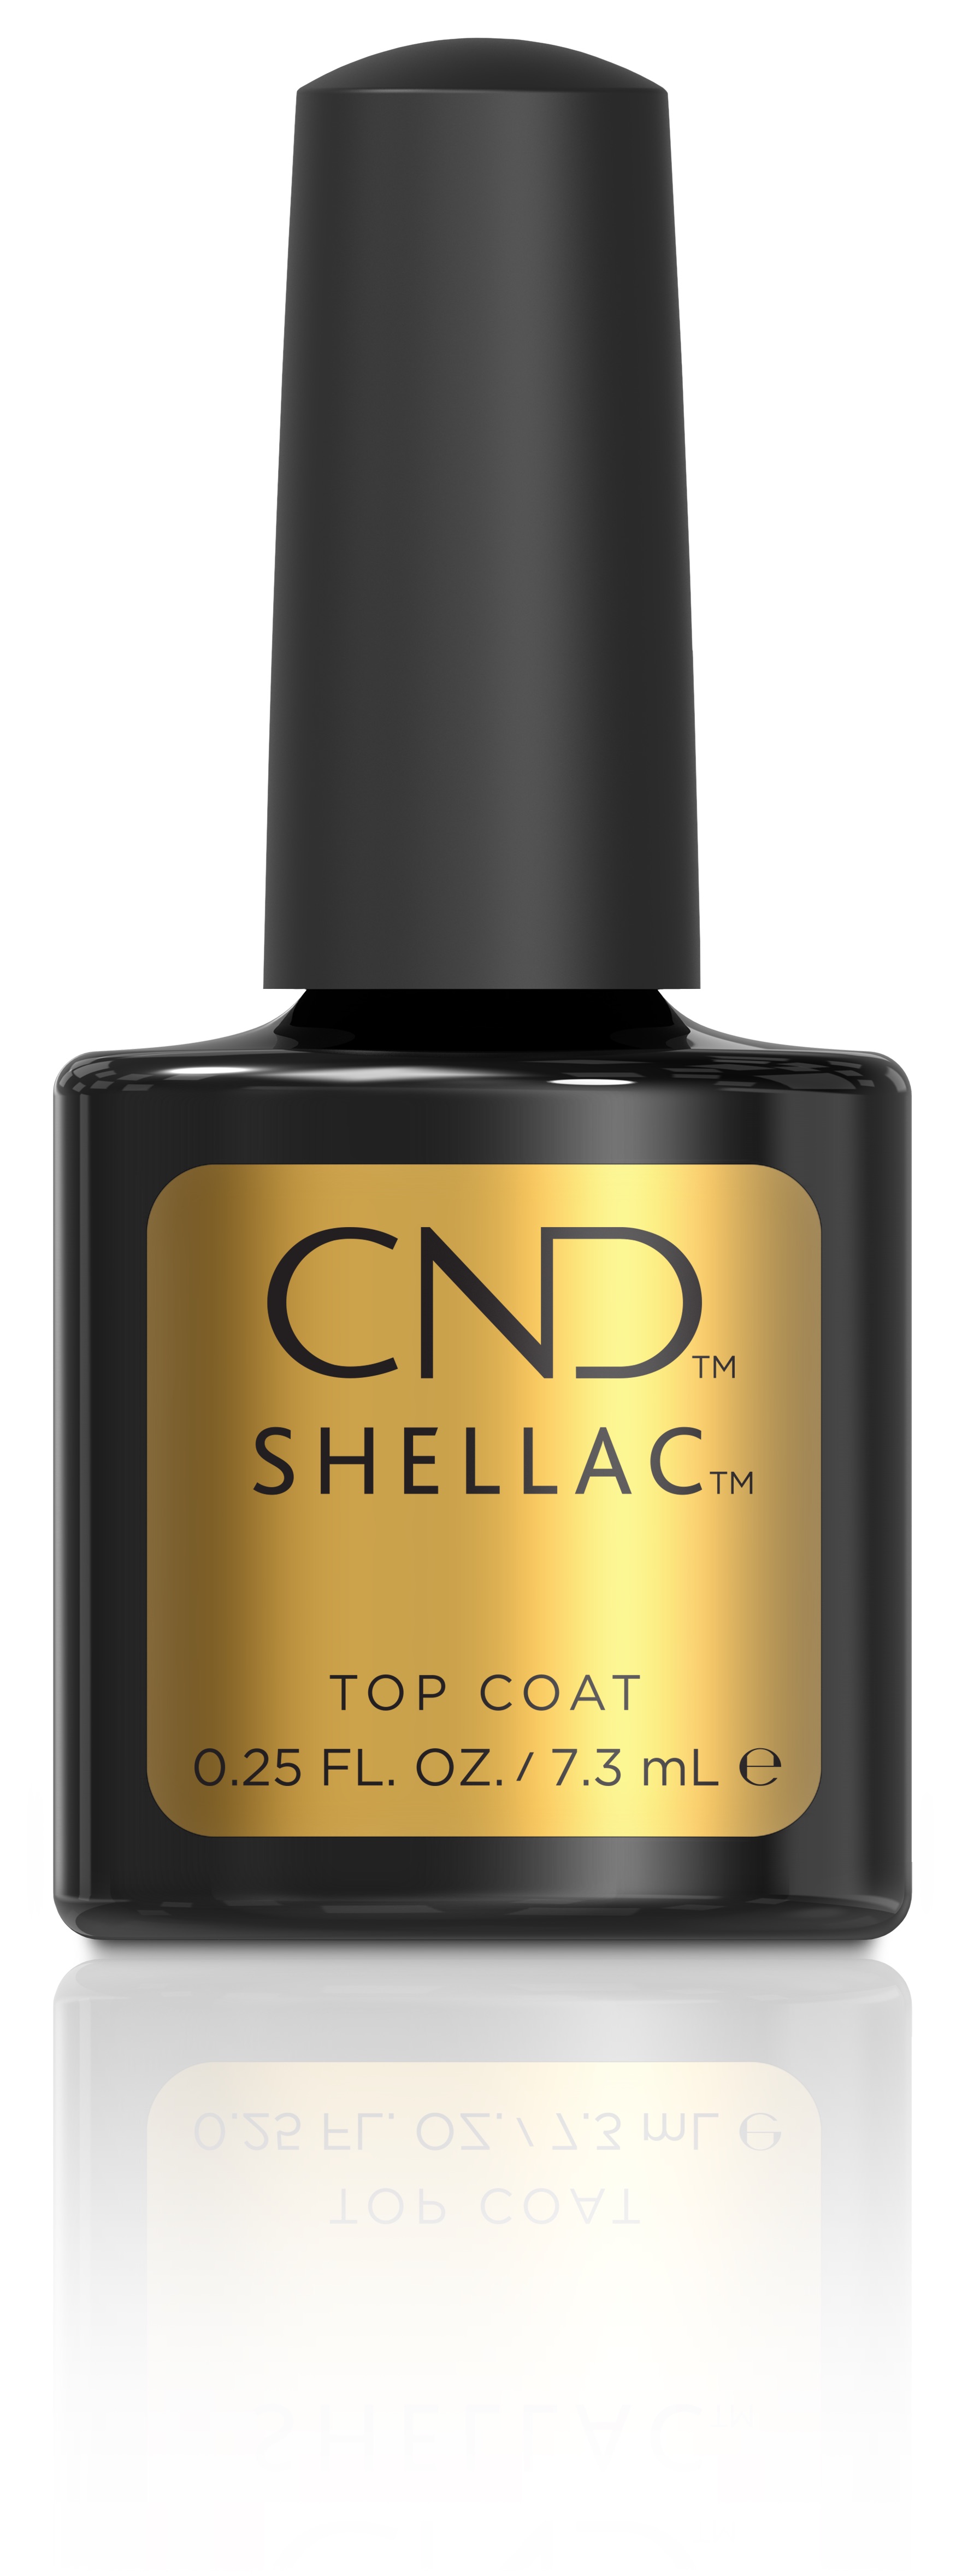 CND Shellac Top Coat